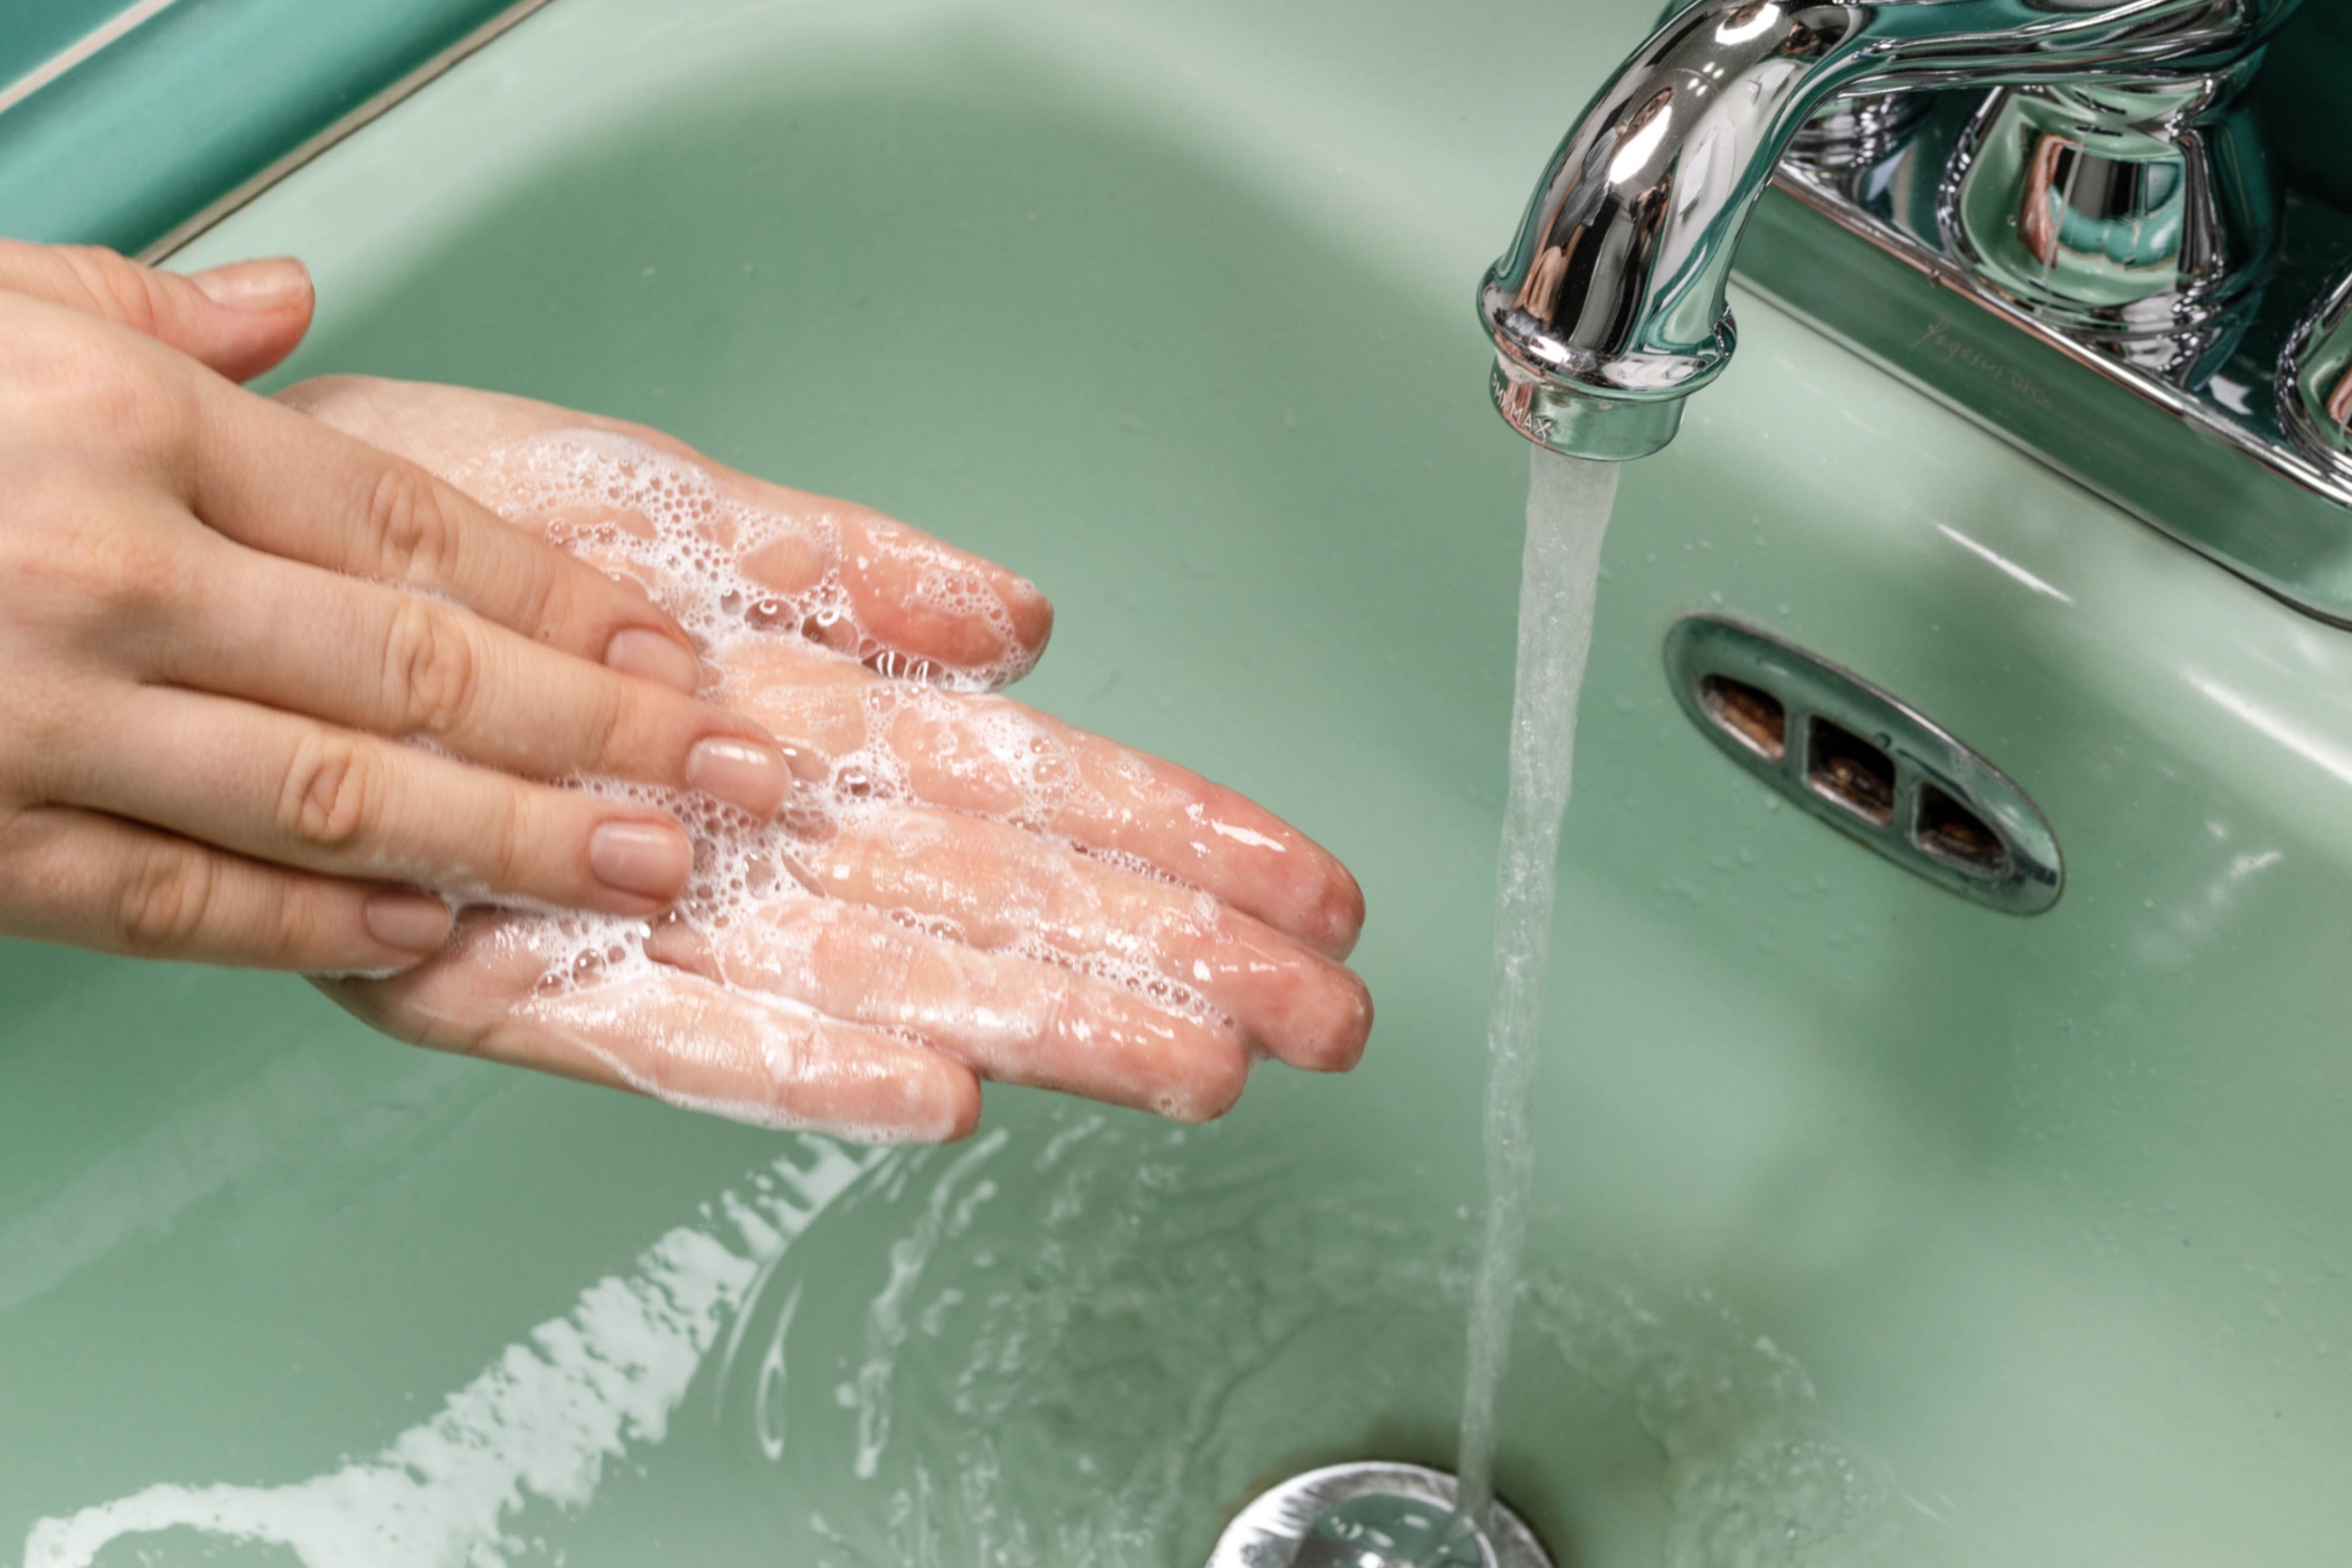 Właściwe mycie rąk - te trzy rzeczy są bardzo ważne